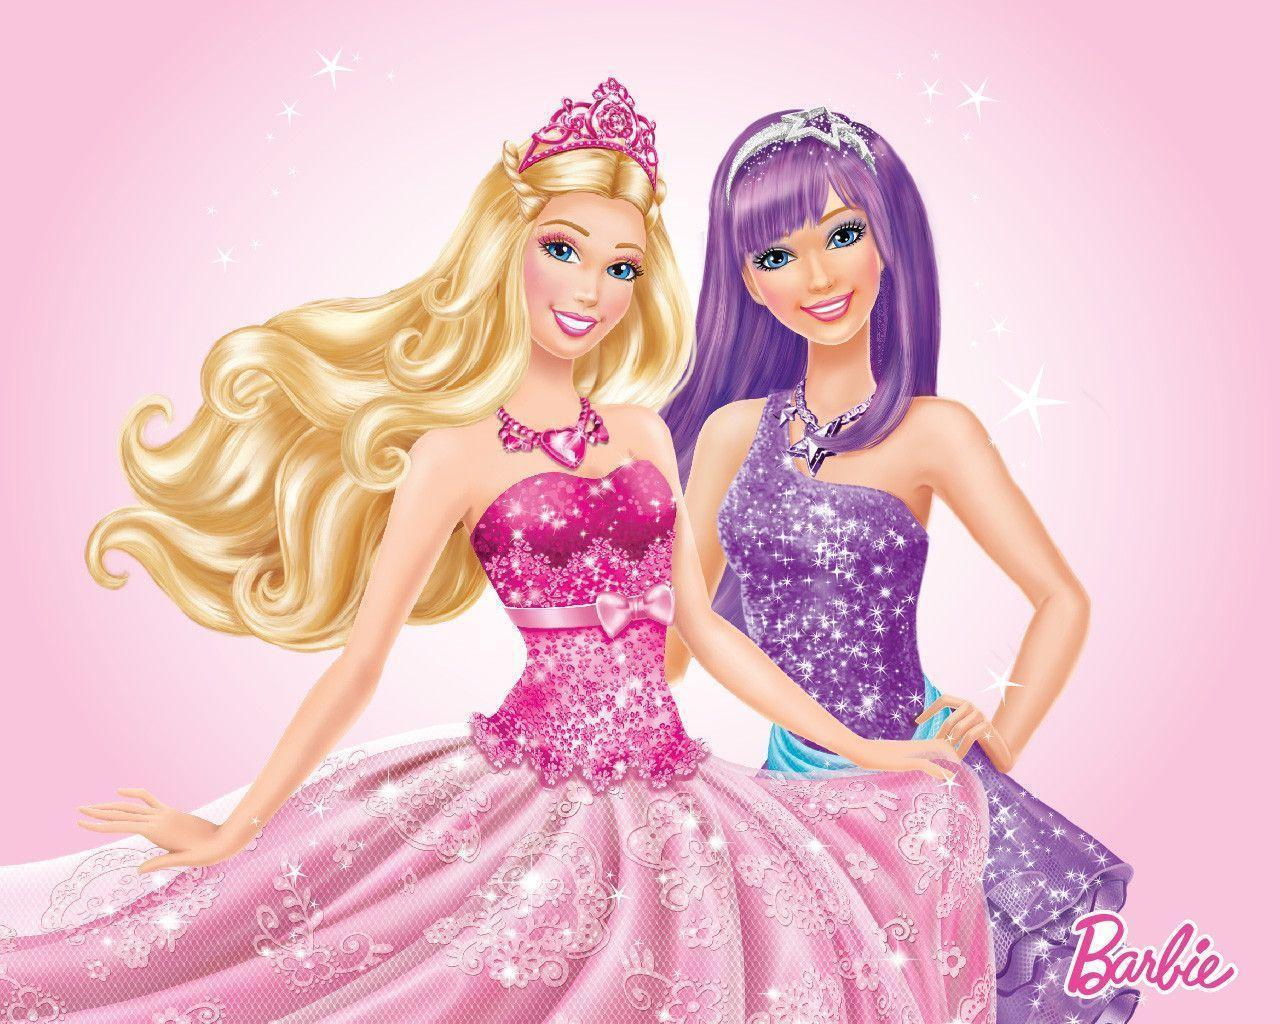 Barbie Princess Wallpapers - Top Free Barbie Princess avec Chateau De Barbie Princesse 